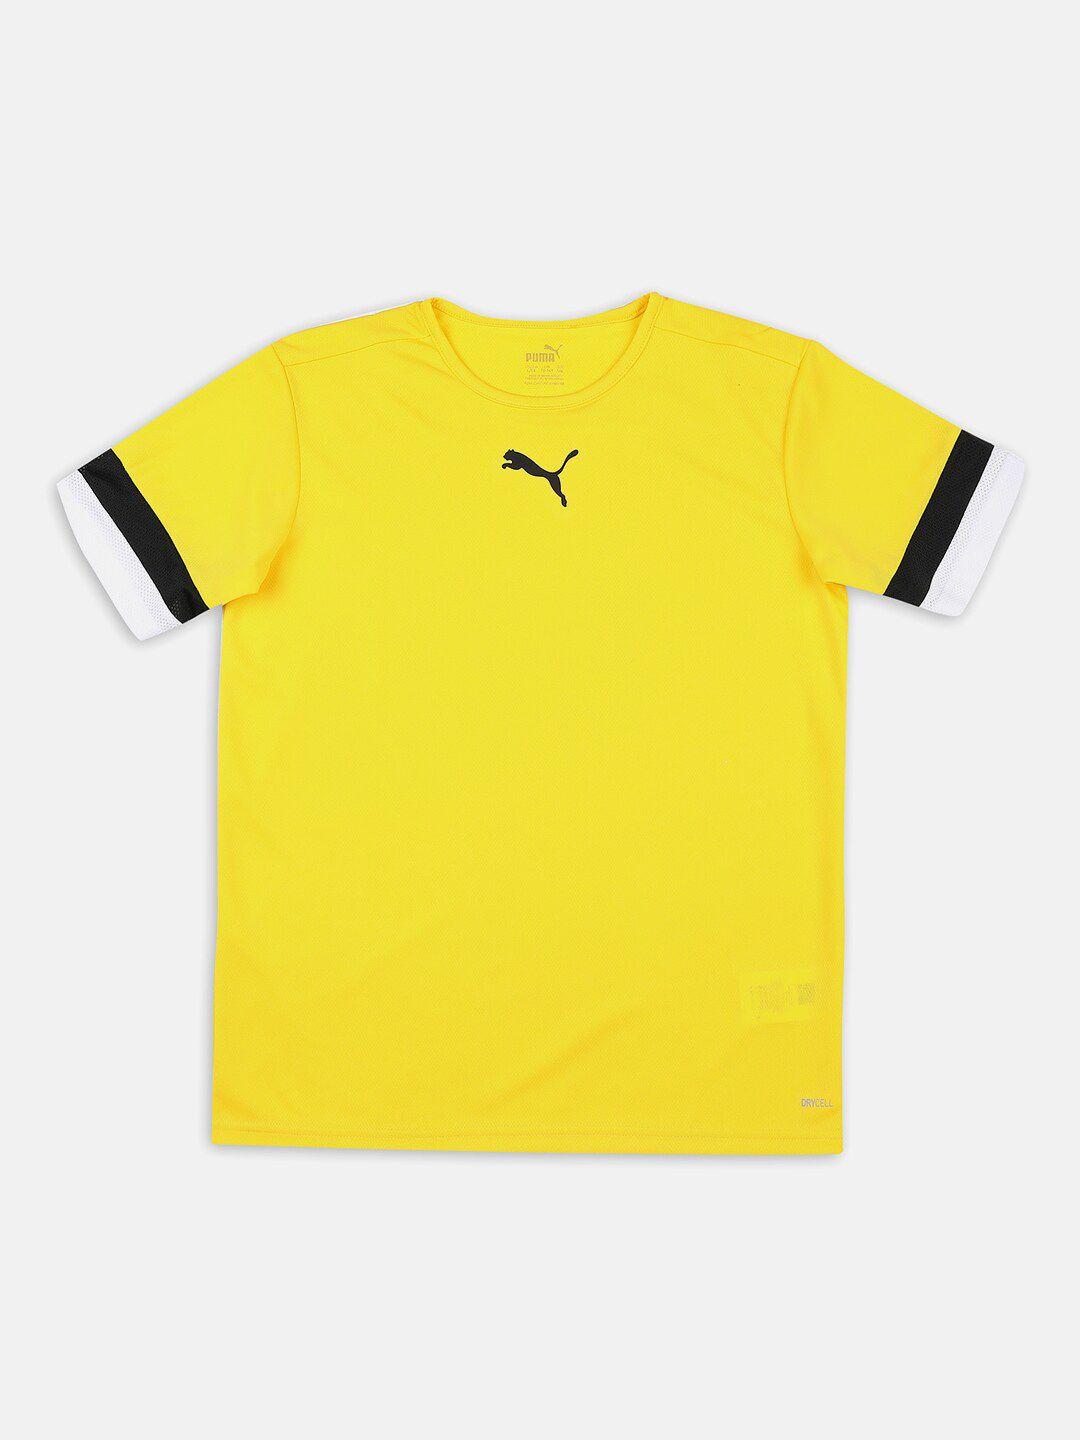 puma kids yellow & black teamrise youth football jersey